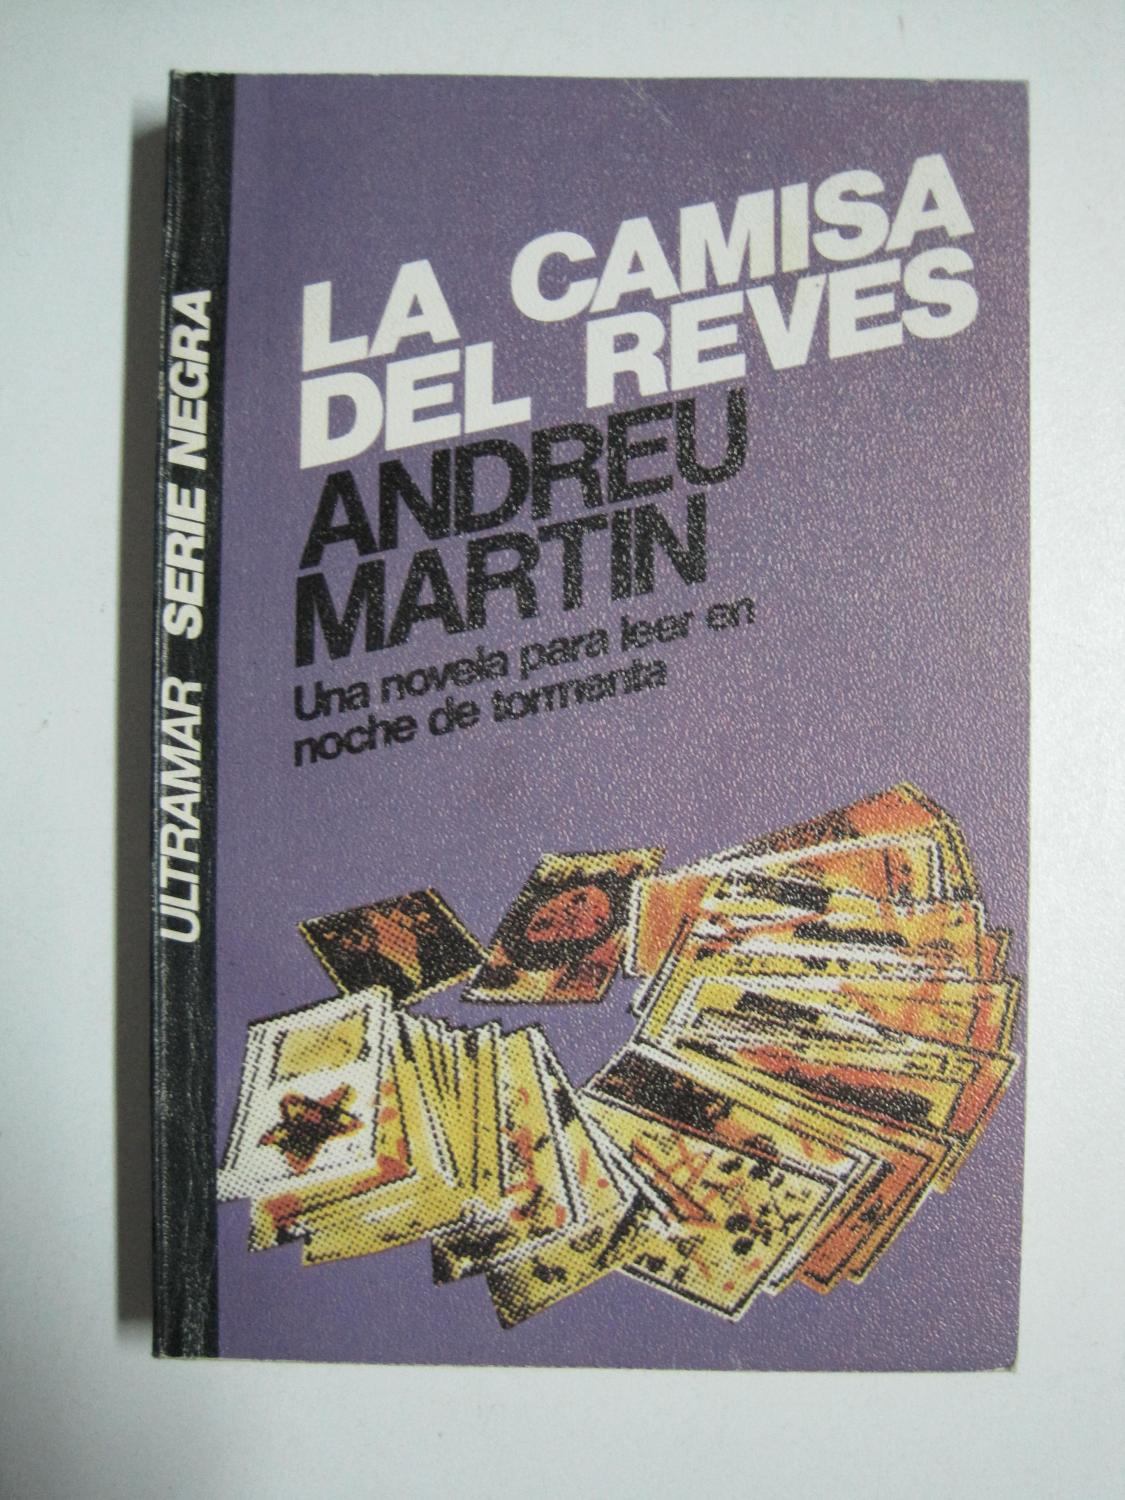 La camisa al reves (Serie negra) - Martin, Andreu